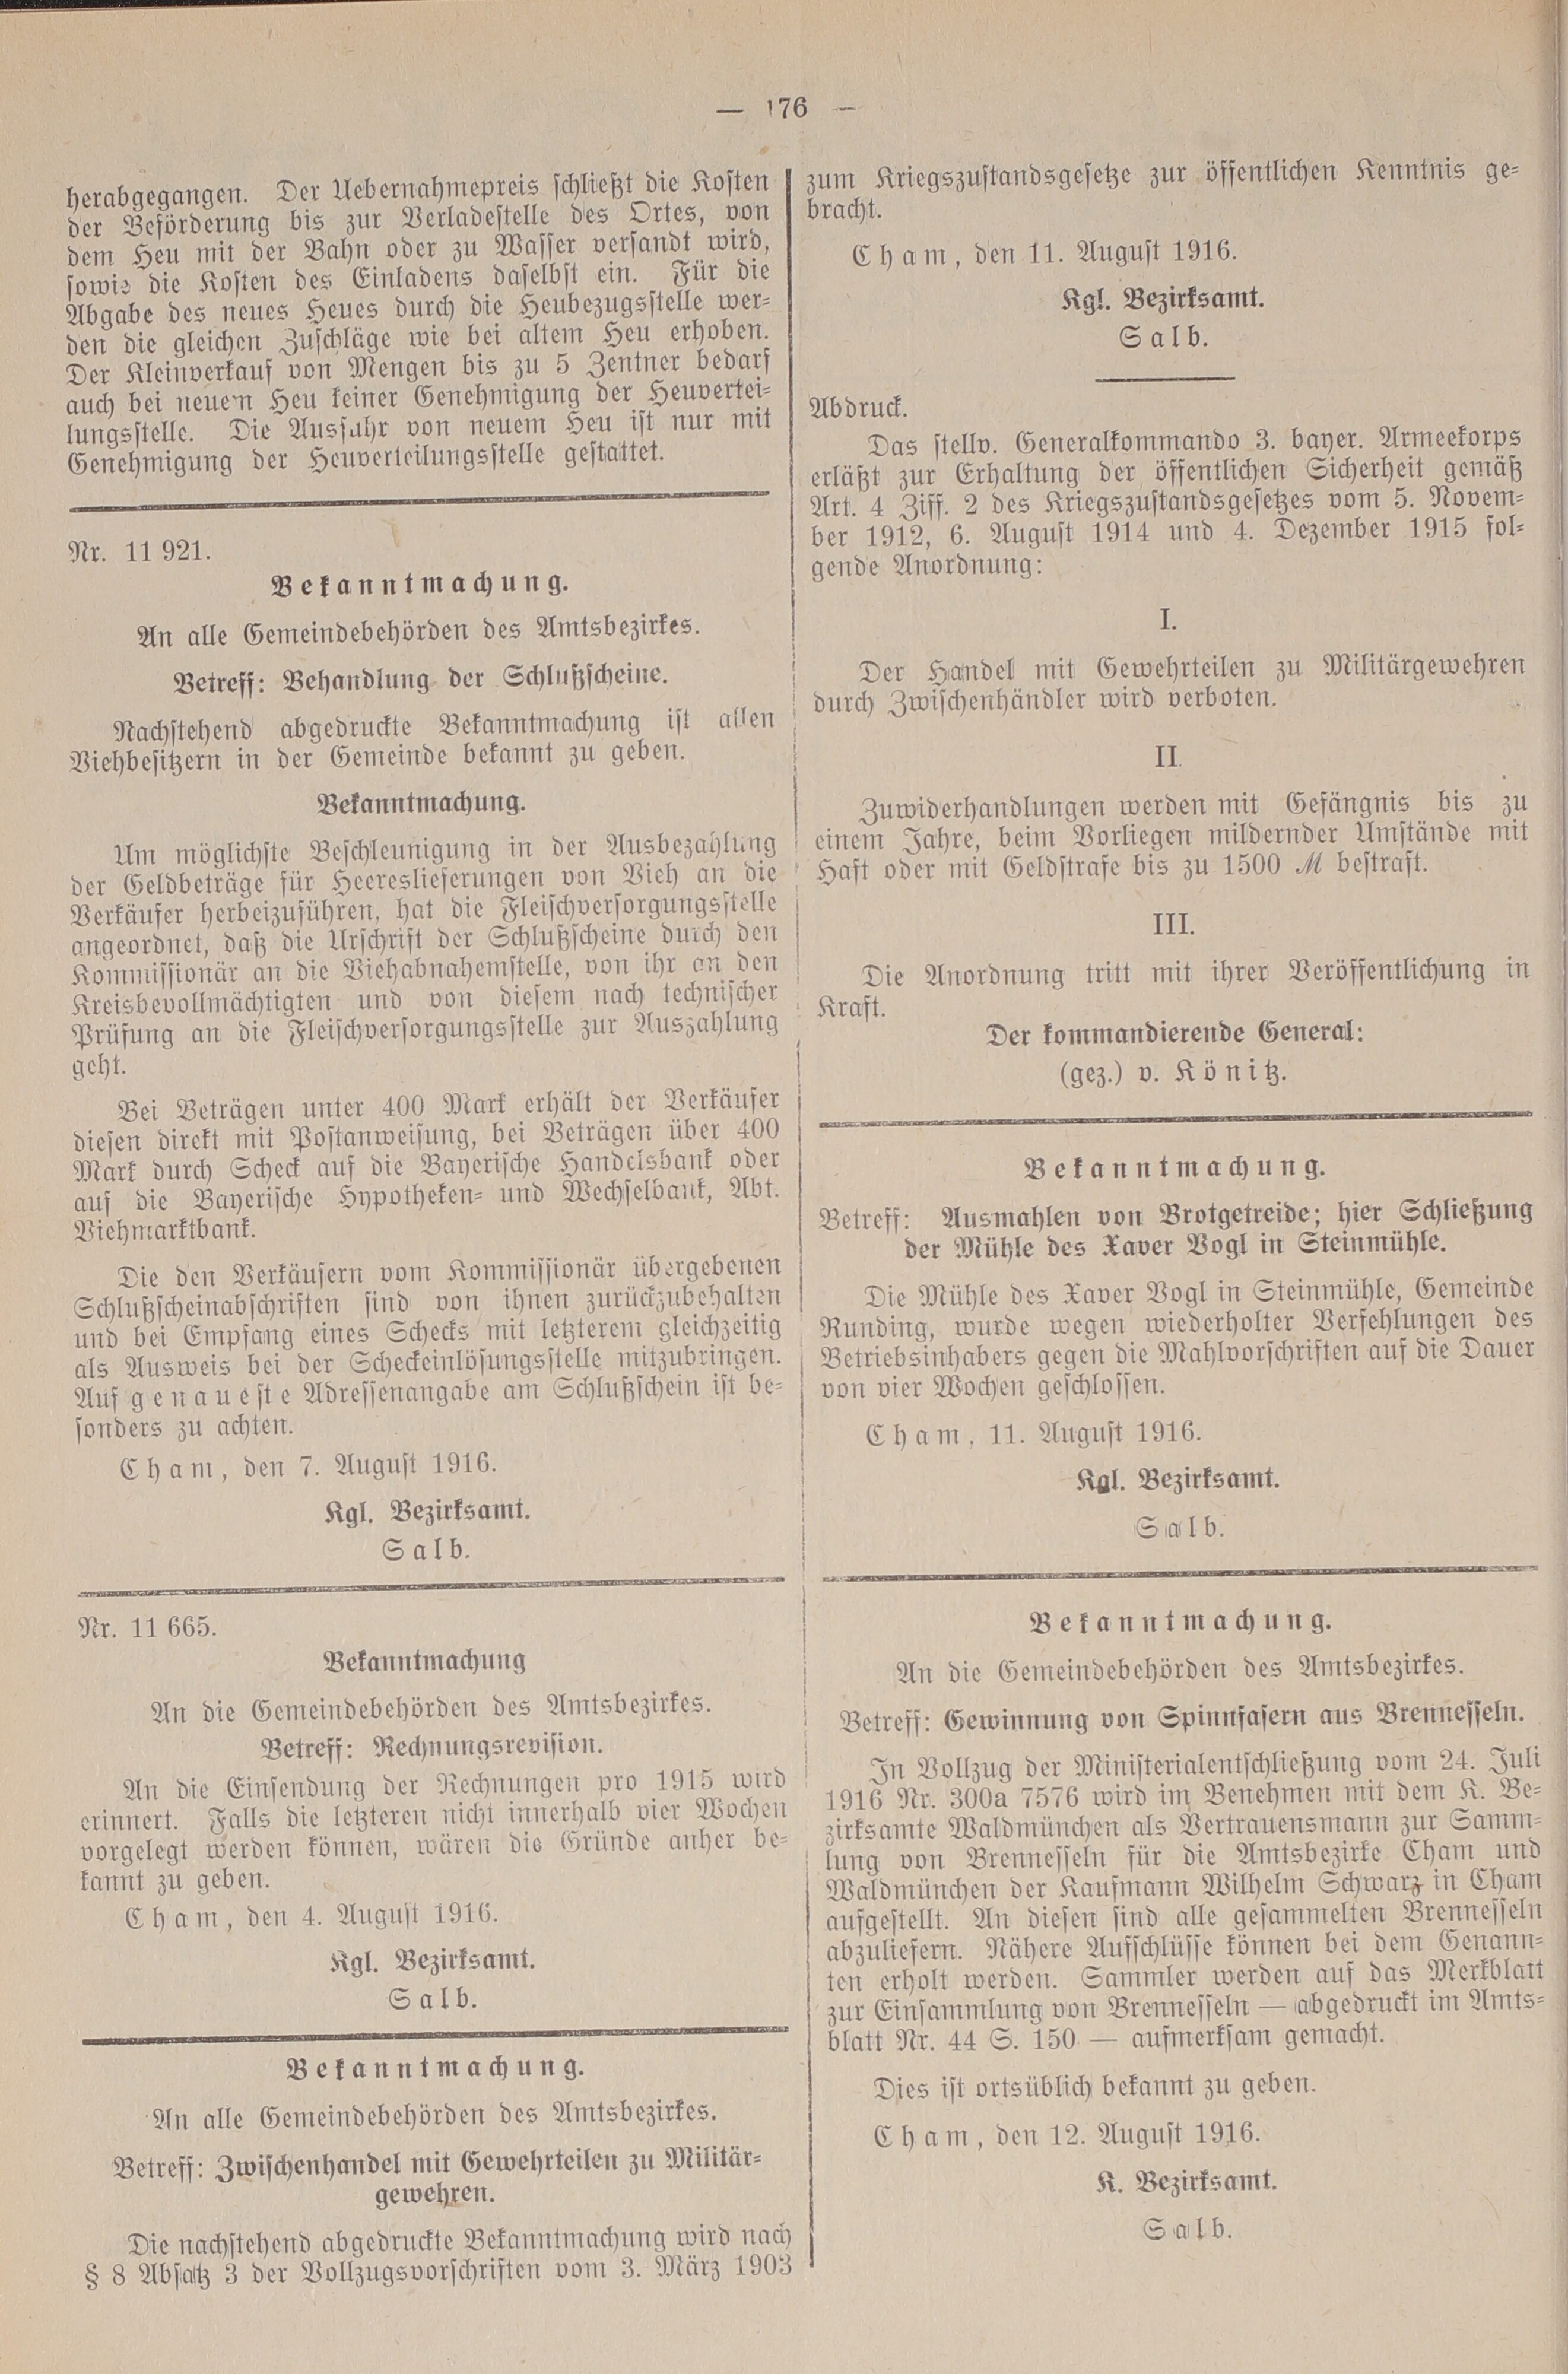 2. amtsblatt-cham-1916-08-17-n52_4850